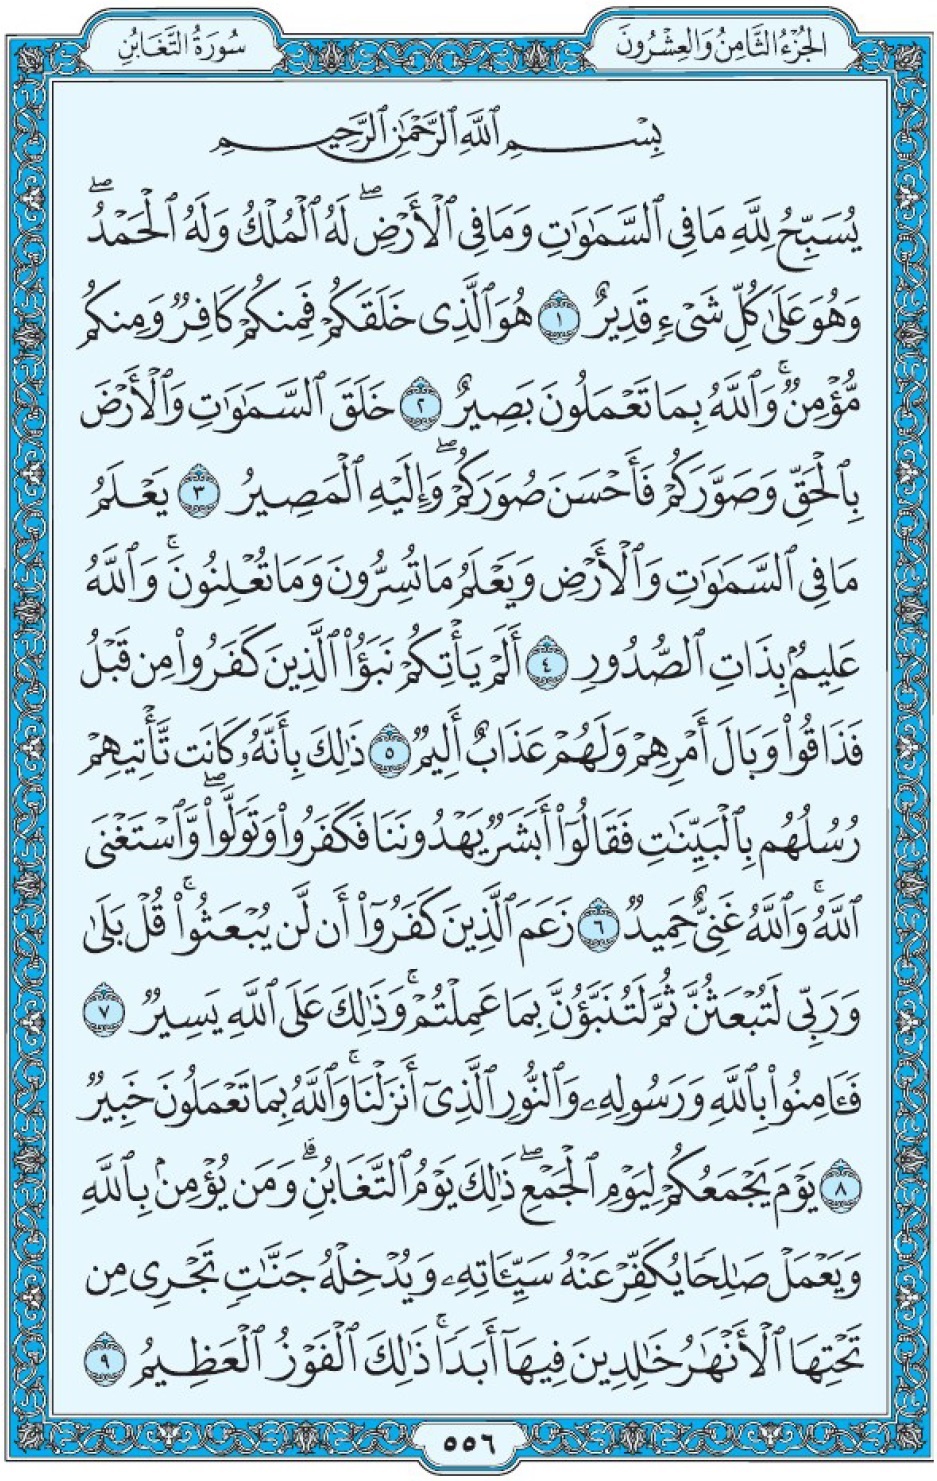 Коран Мединский мусхаф страница 556, сура 64 ат-Тагабун سورة ٦٤ التغابن 